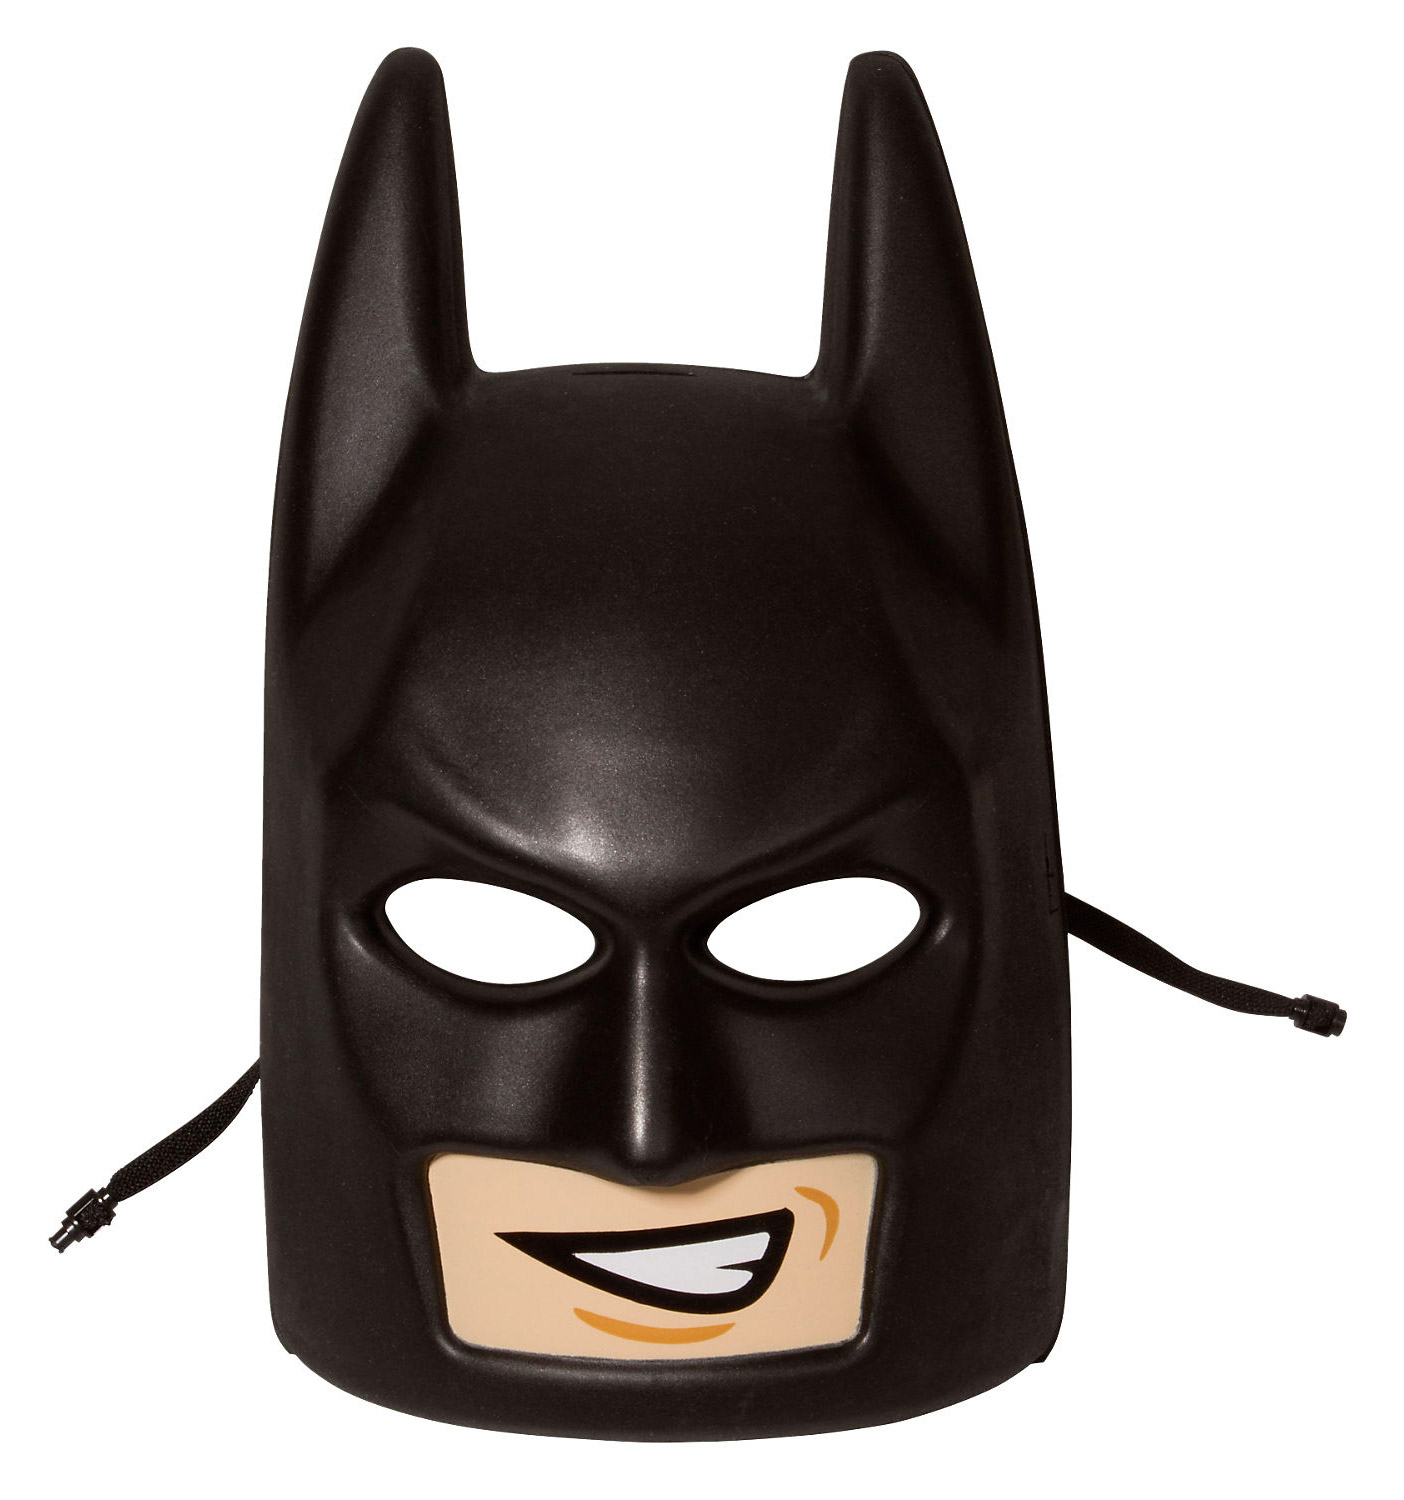 LEGO Objets divers 853642 pas cher, Masque Batman LEGO Batman Le Film